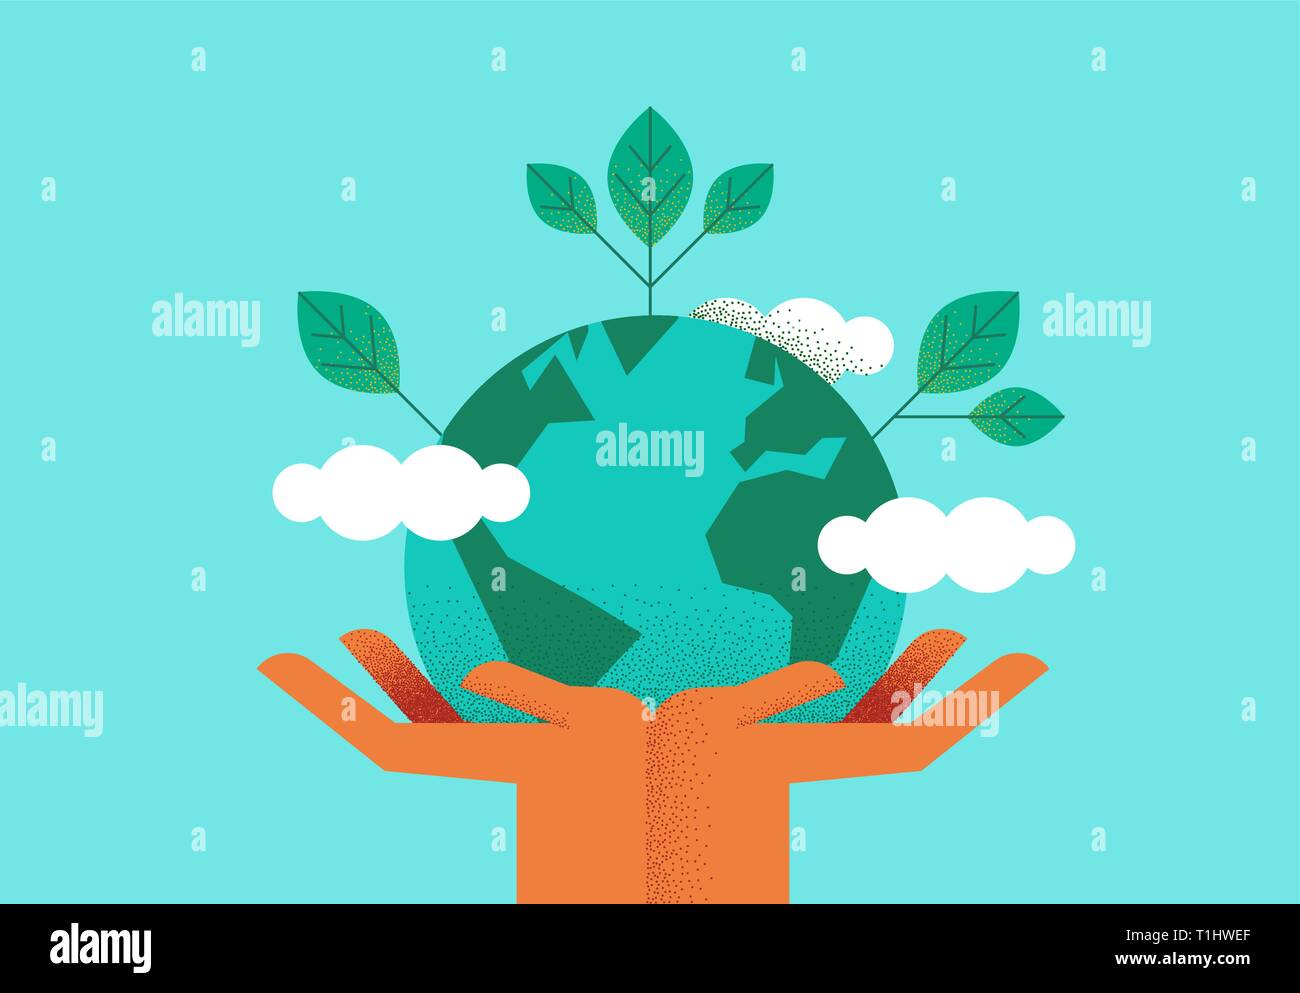 Les mains tenant la planète terre avec des feuilles vertes pour eco friendly concept. De l'environnement ou la nature de l'aide l'illustration. Illustration de Vecteur